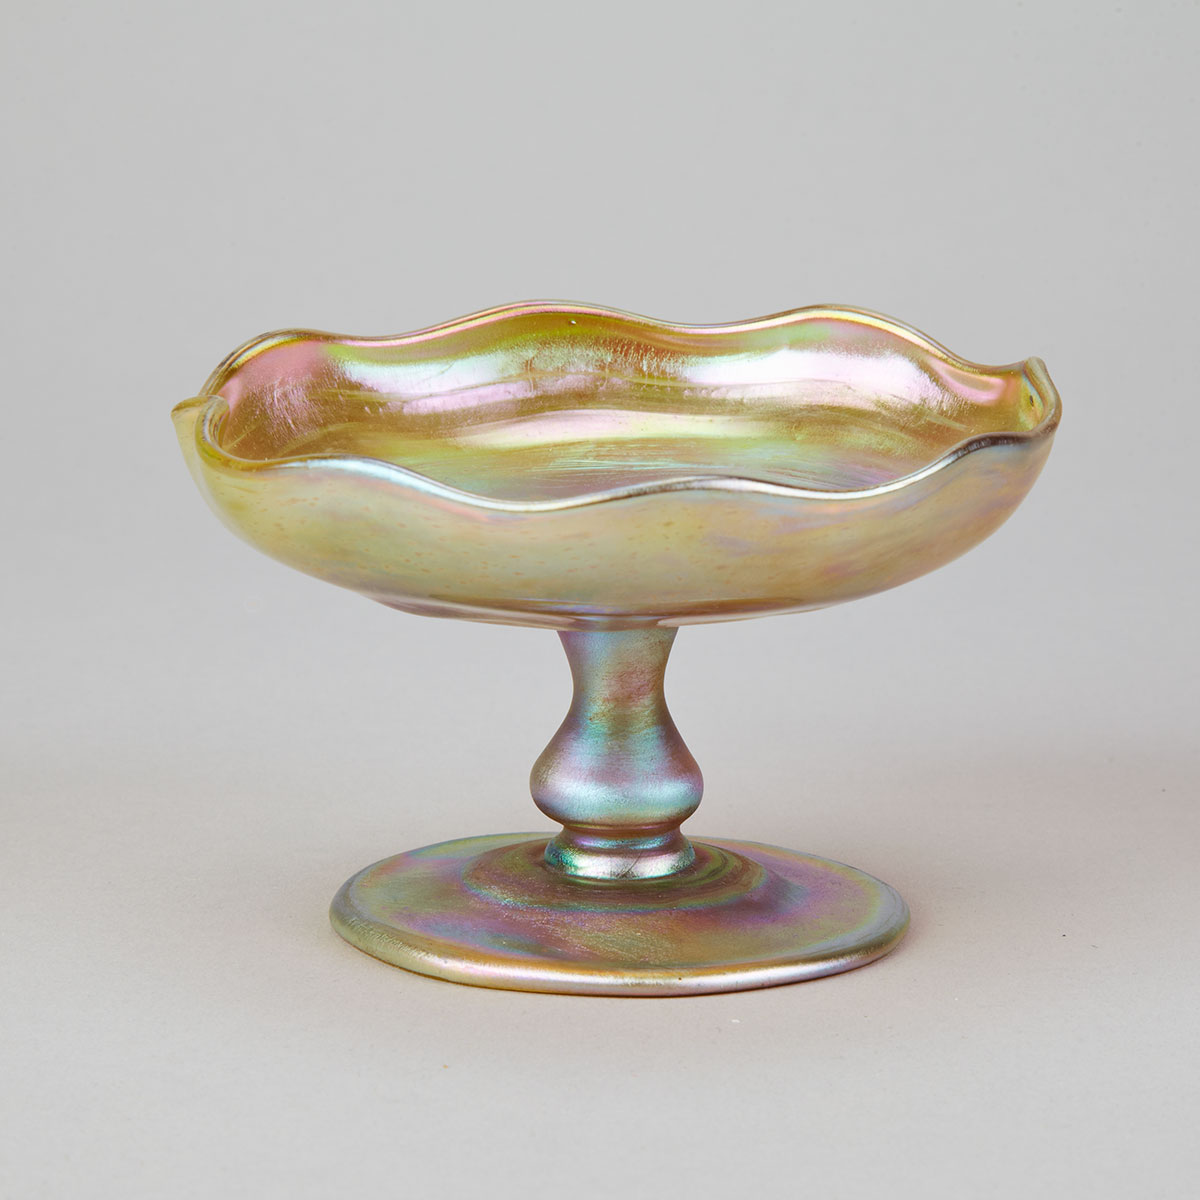 Tiffany ‘Favrile’ Iridescent Glass Small Comport, c.1904